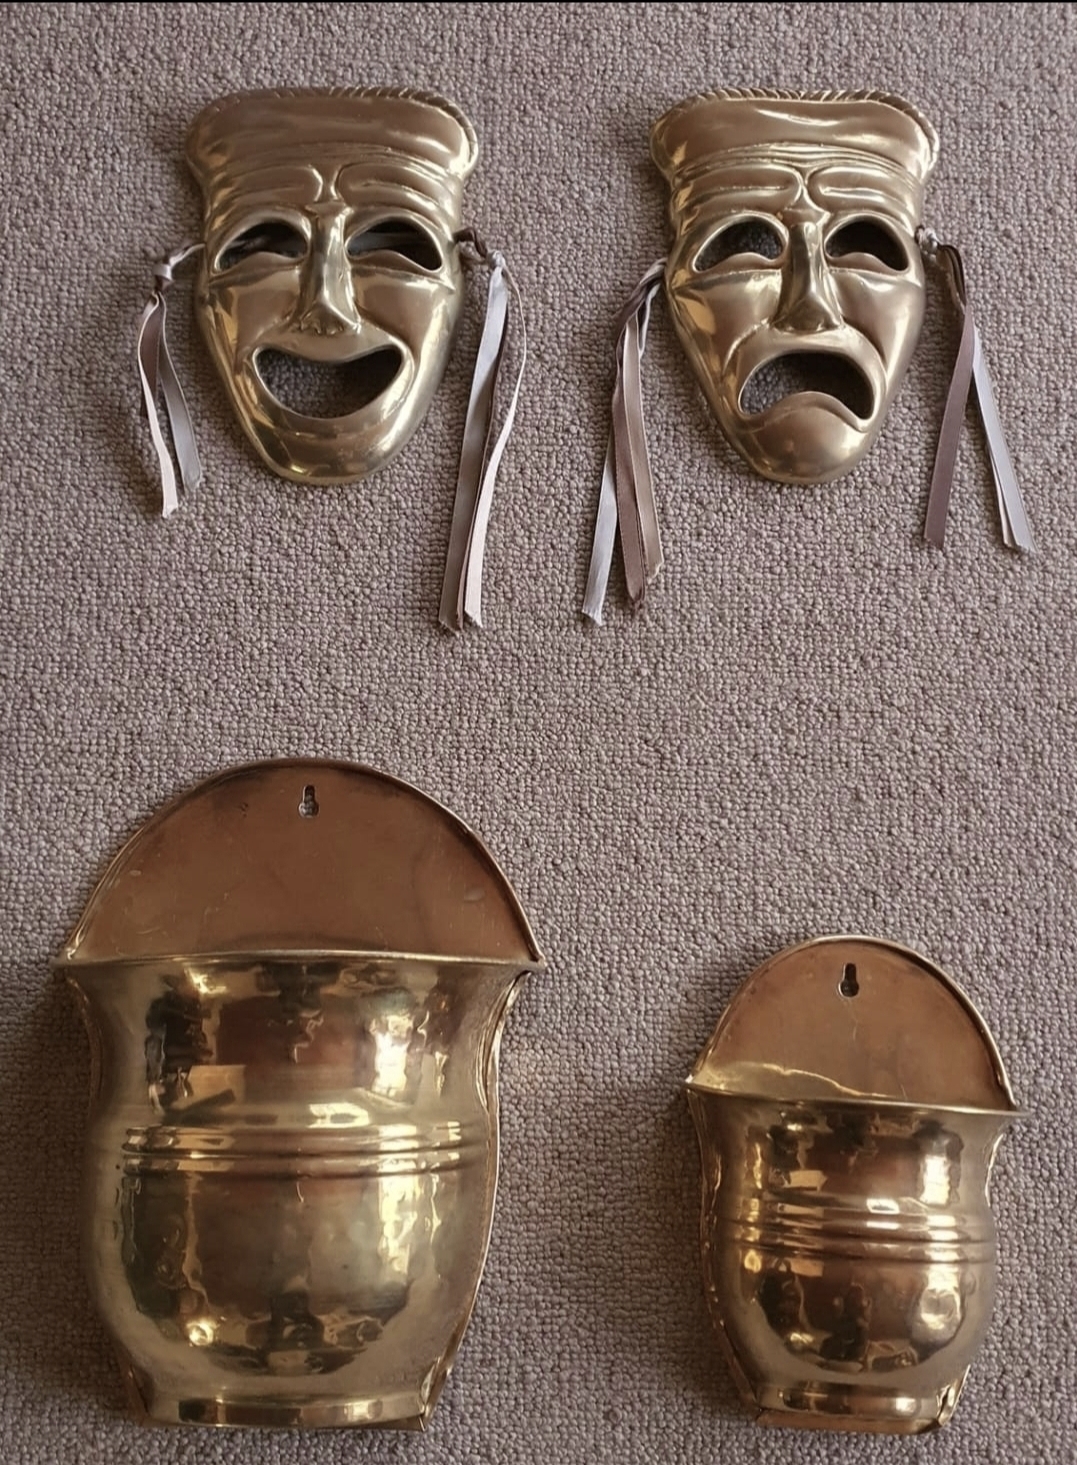 Brass clown faces & baskets